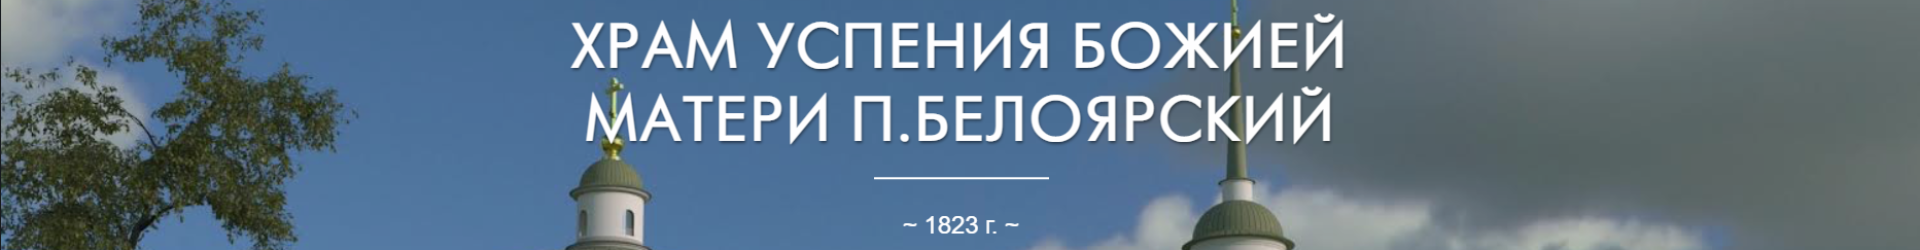 28 июля празднуется день памяти Благоверного князя Владимира и день крещения Руси